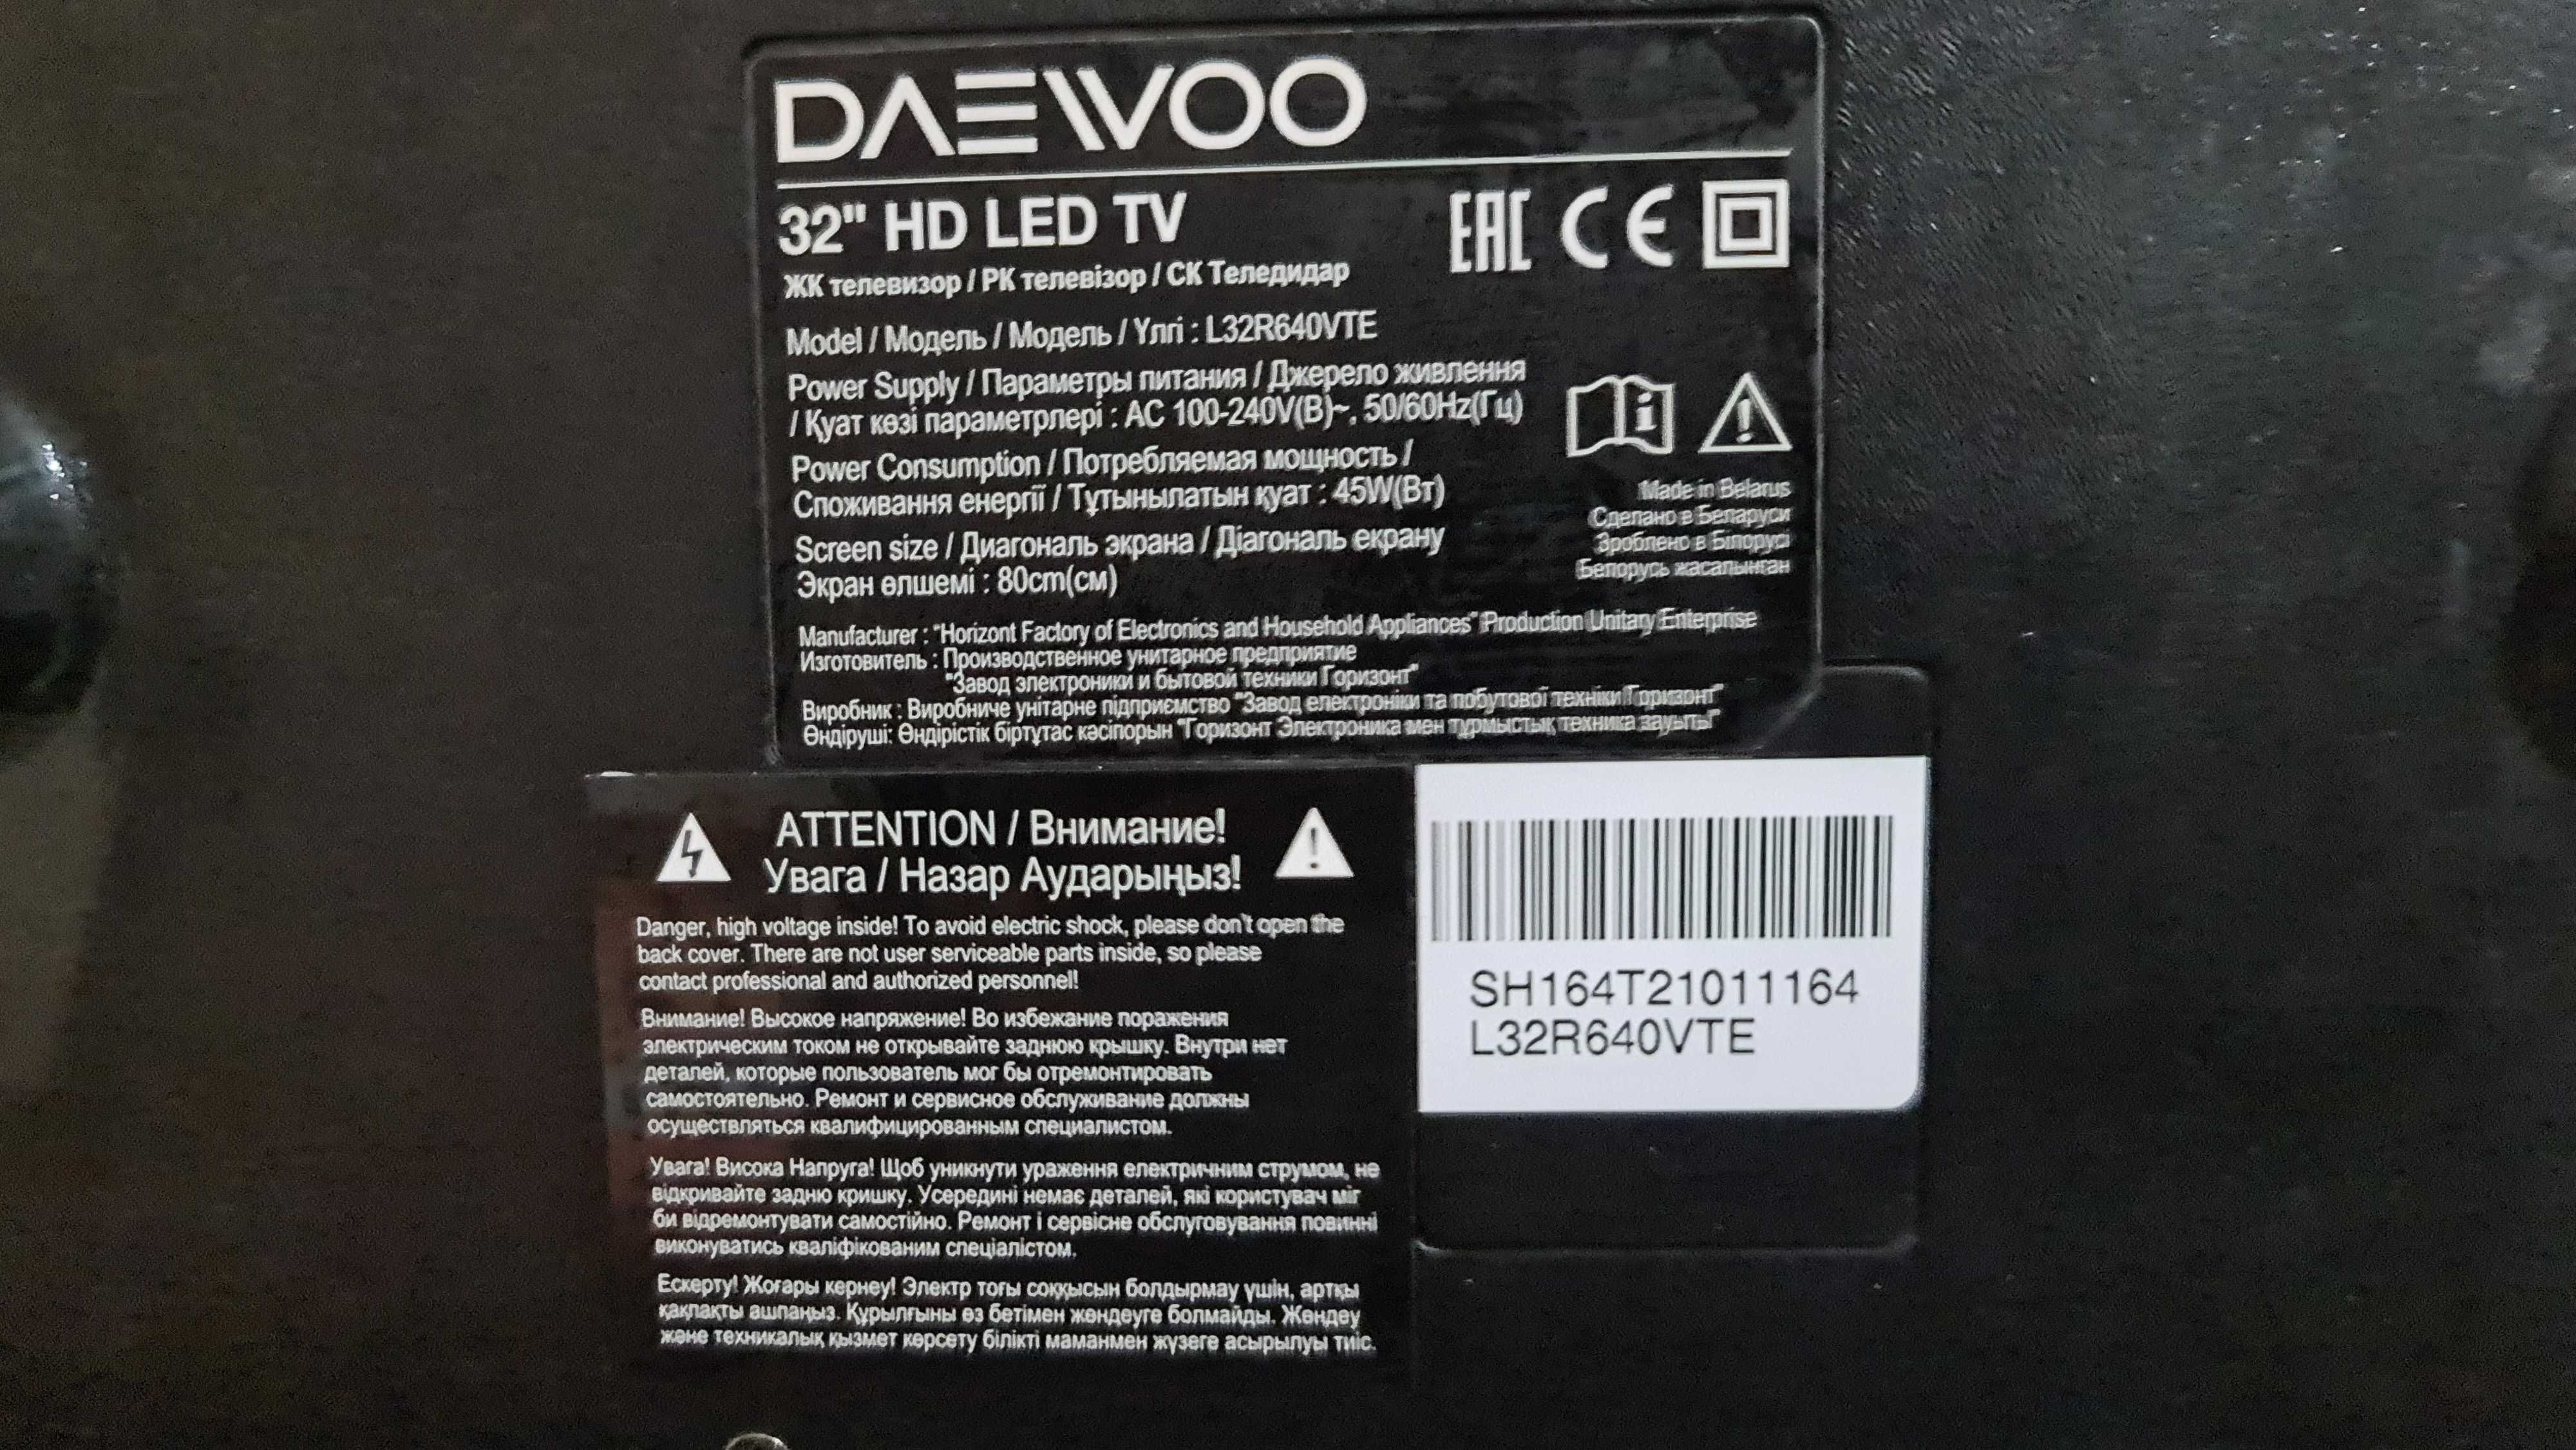 Продается цветной жк телевизор Daewoo, диагональ 80 см, 50.000, торг